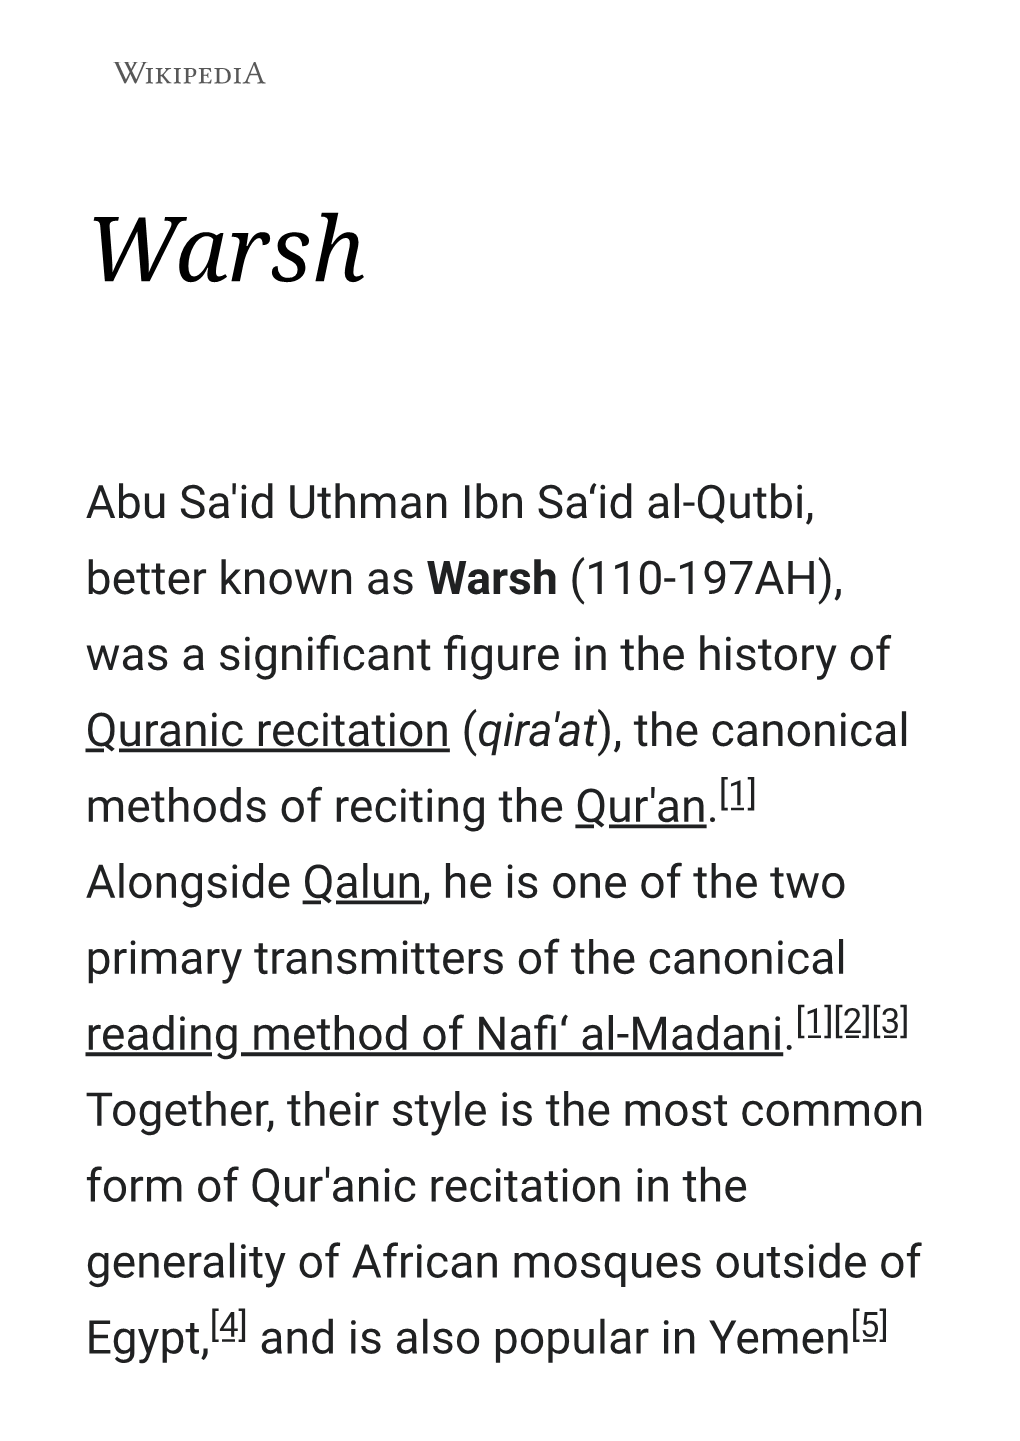 Abu Sa'id Uthman Ibn Sa'id Al-Qutbi, Better Known As